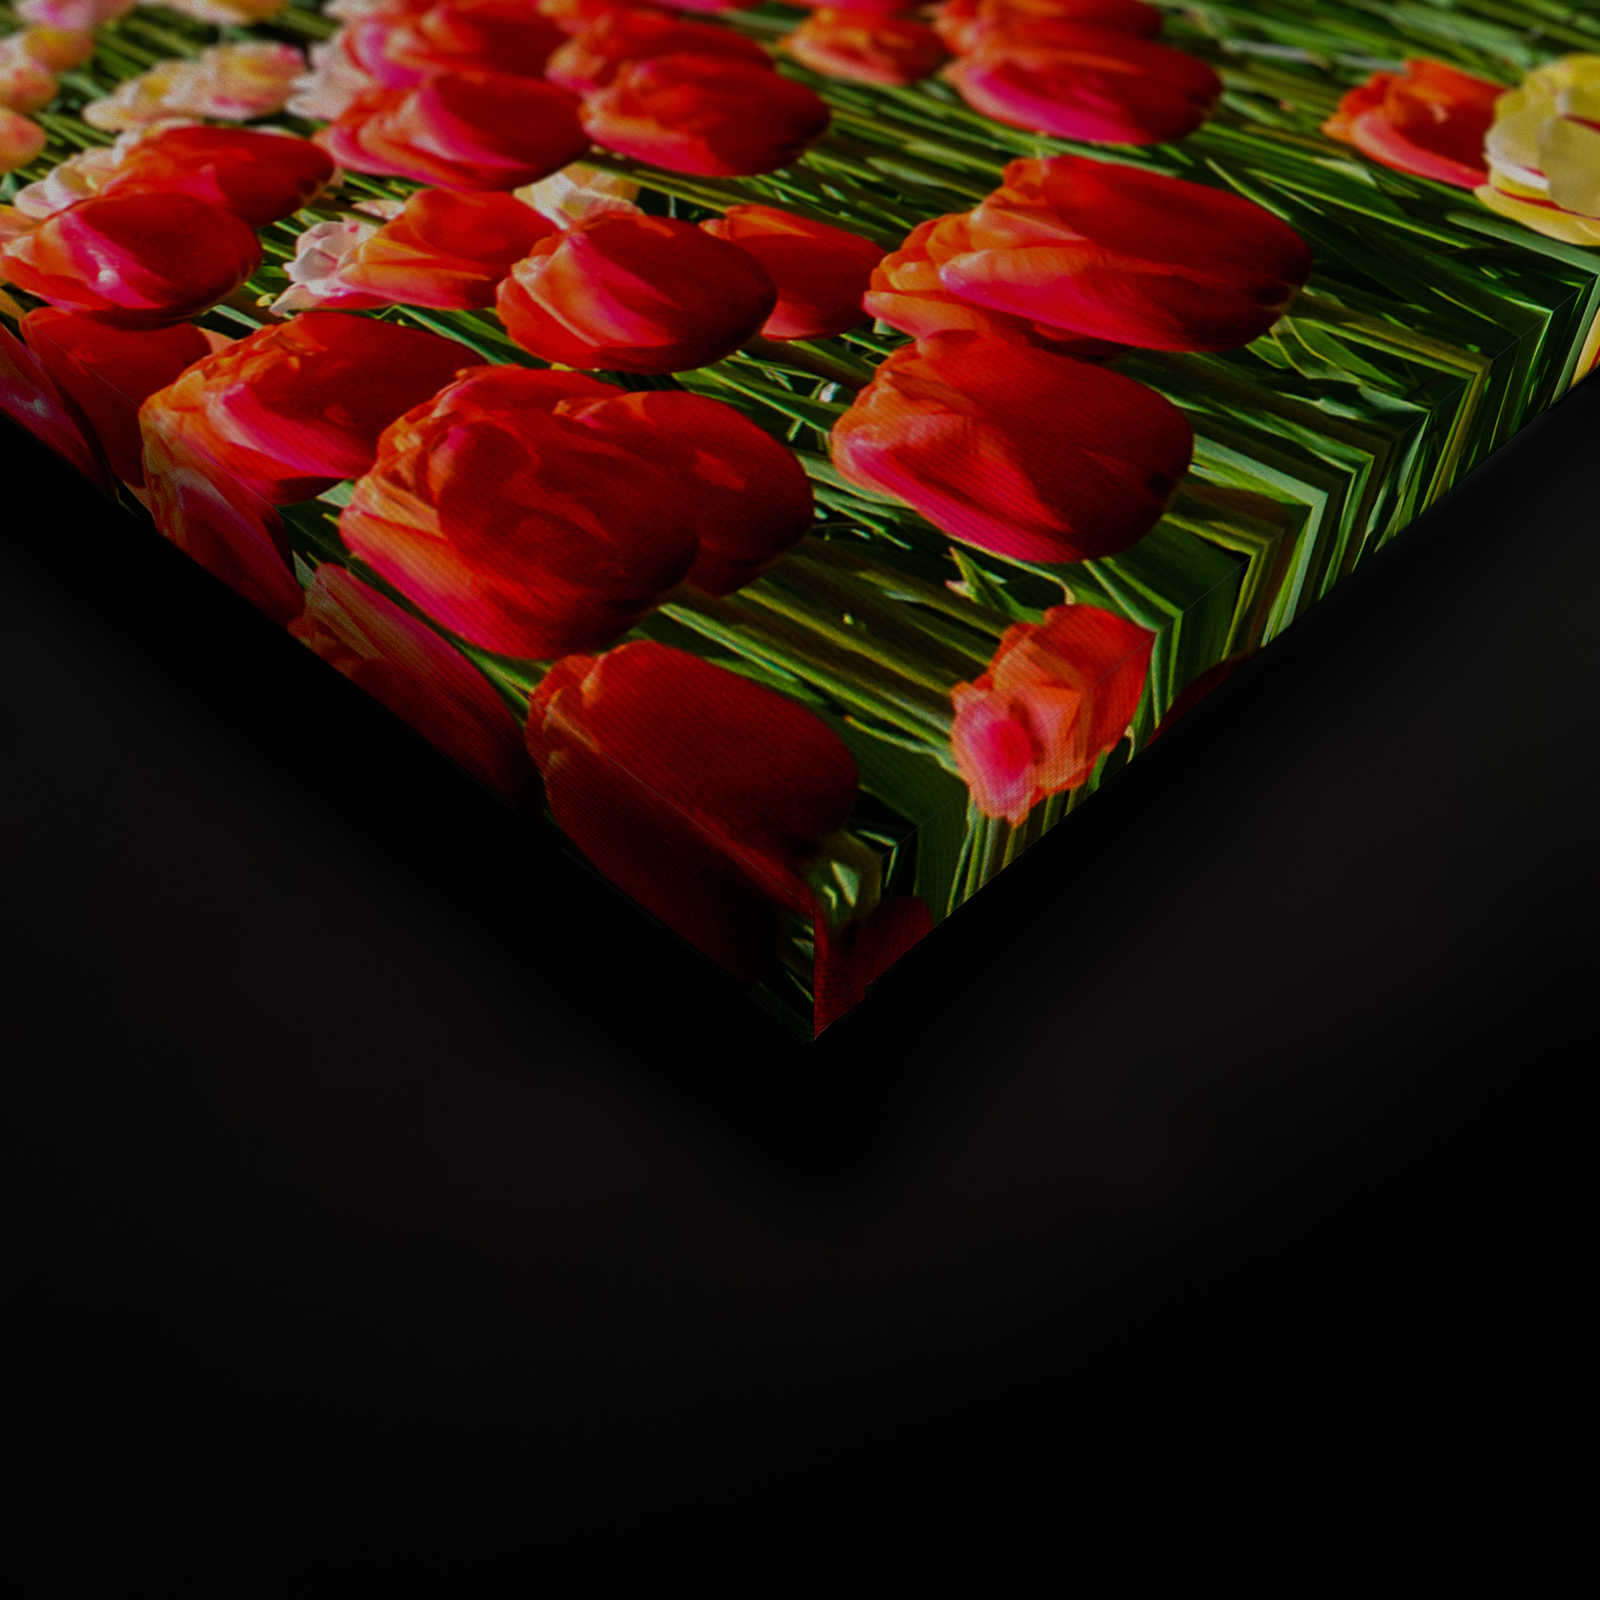             Tela Holland Tulips & Pinwheel - 0,90 m x 0,60 m
        